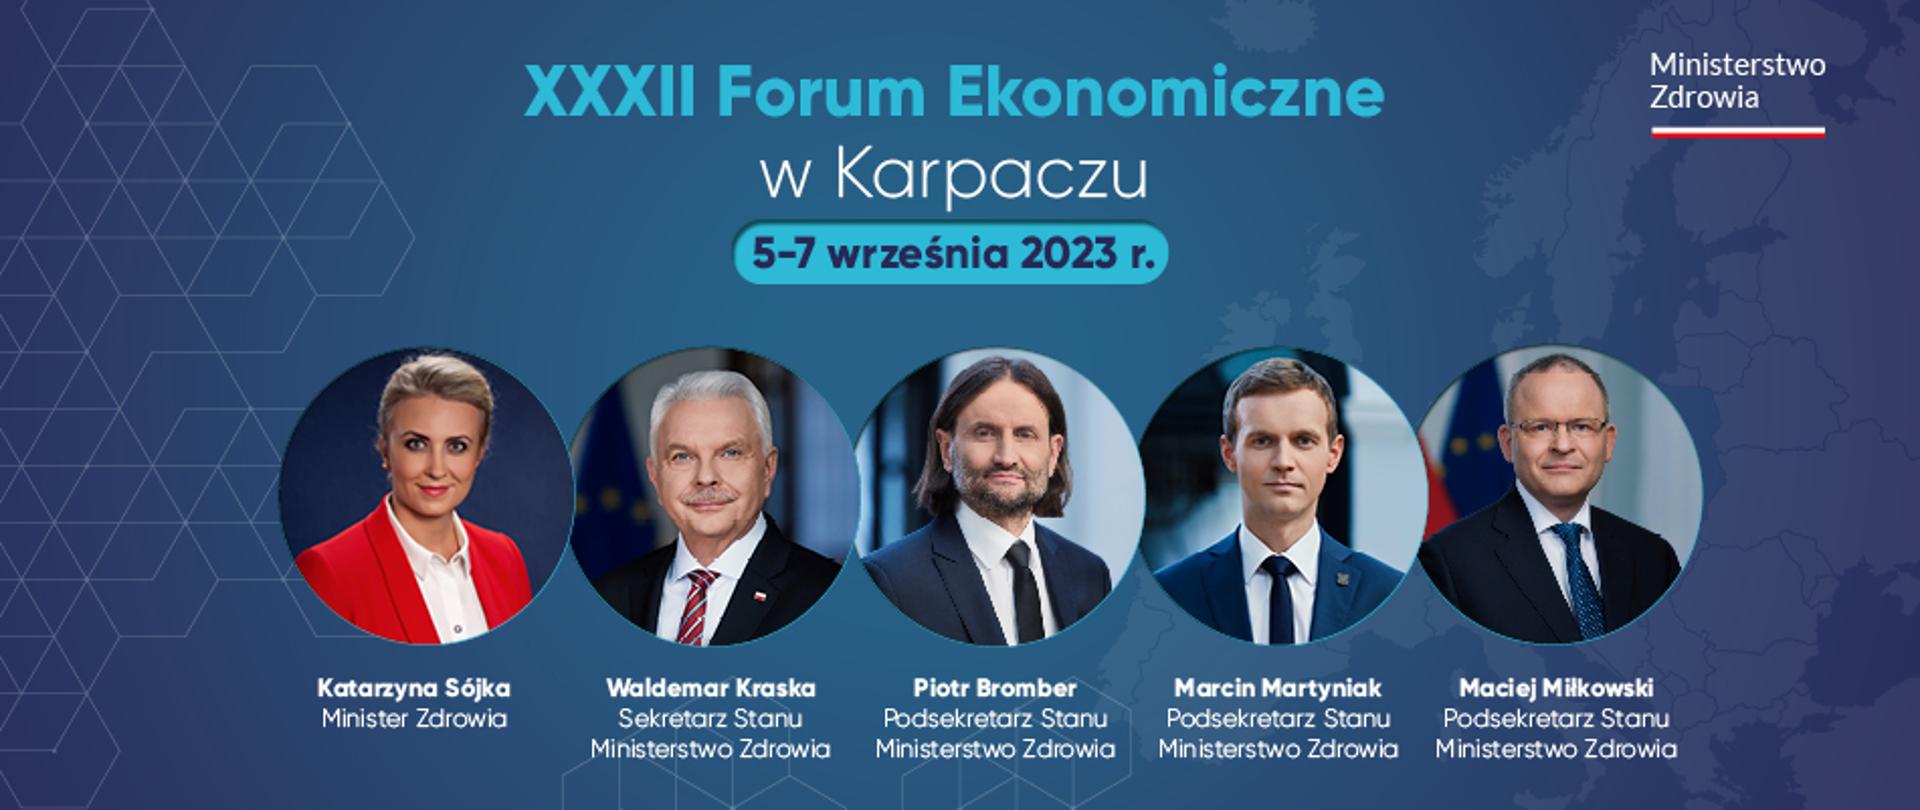 Grafika ze zdjęciami kierownictwa Ministerstwa Zdrowia, która informuje, że ministrowie będą uczestniczyć w debatach podczas XXXII Forum Ekonomicznego w Karpaczu. 